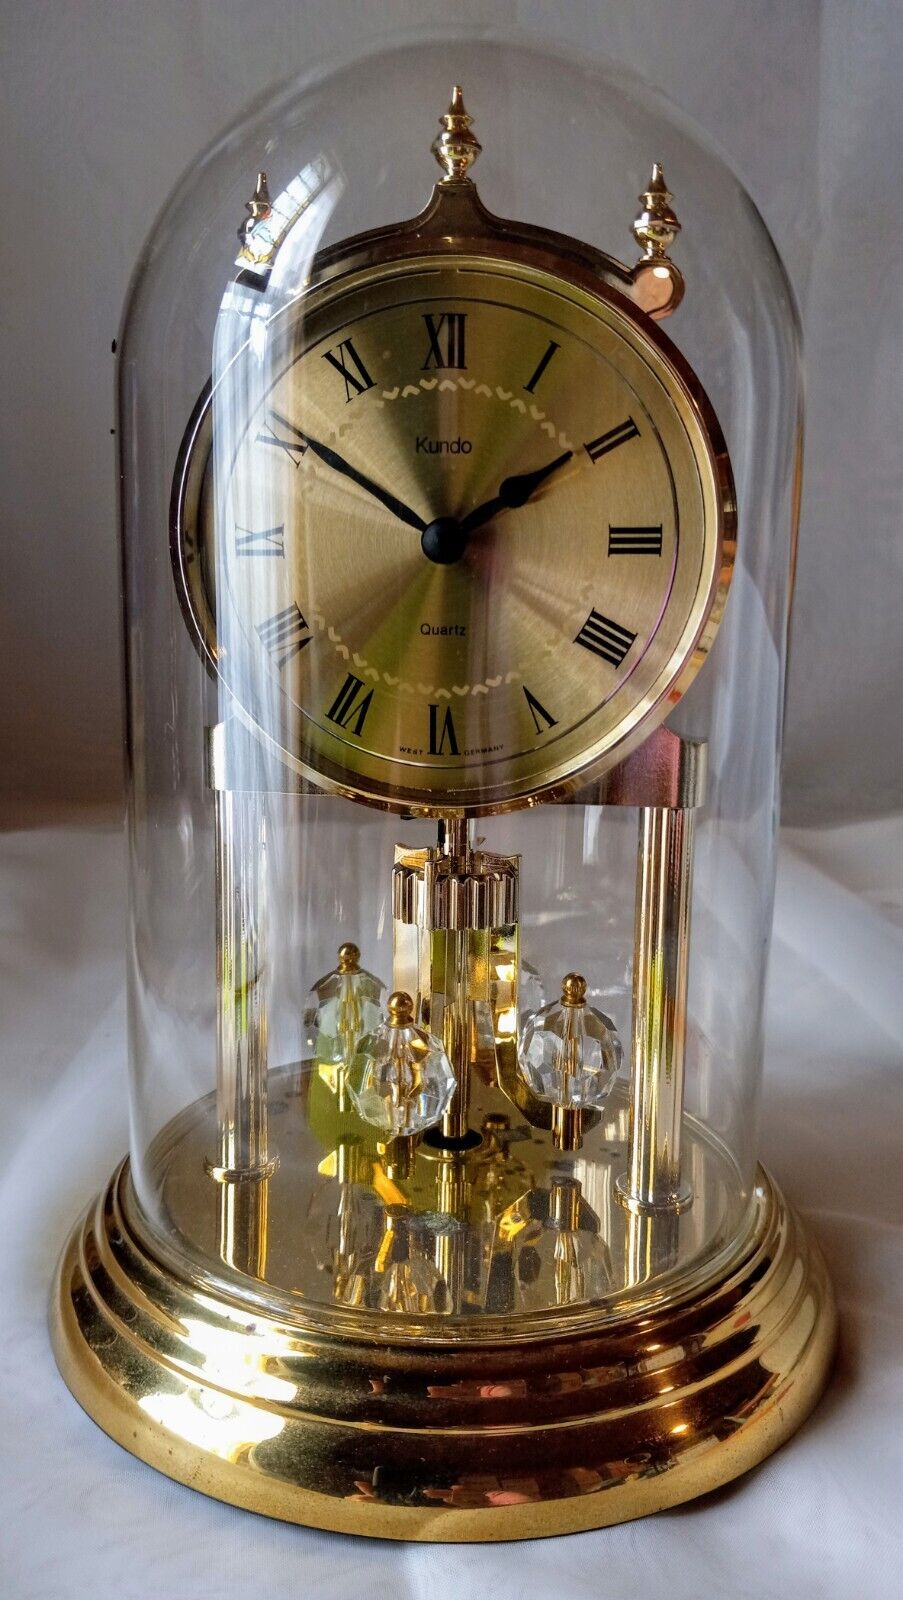 Kundo Anniversary Clock Swarovski Crystal W. Germany Quartz Glass Dome  